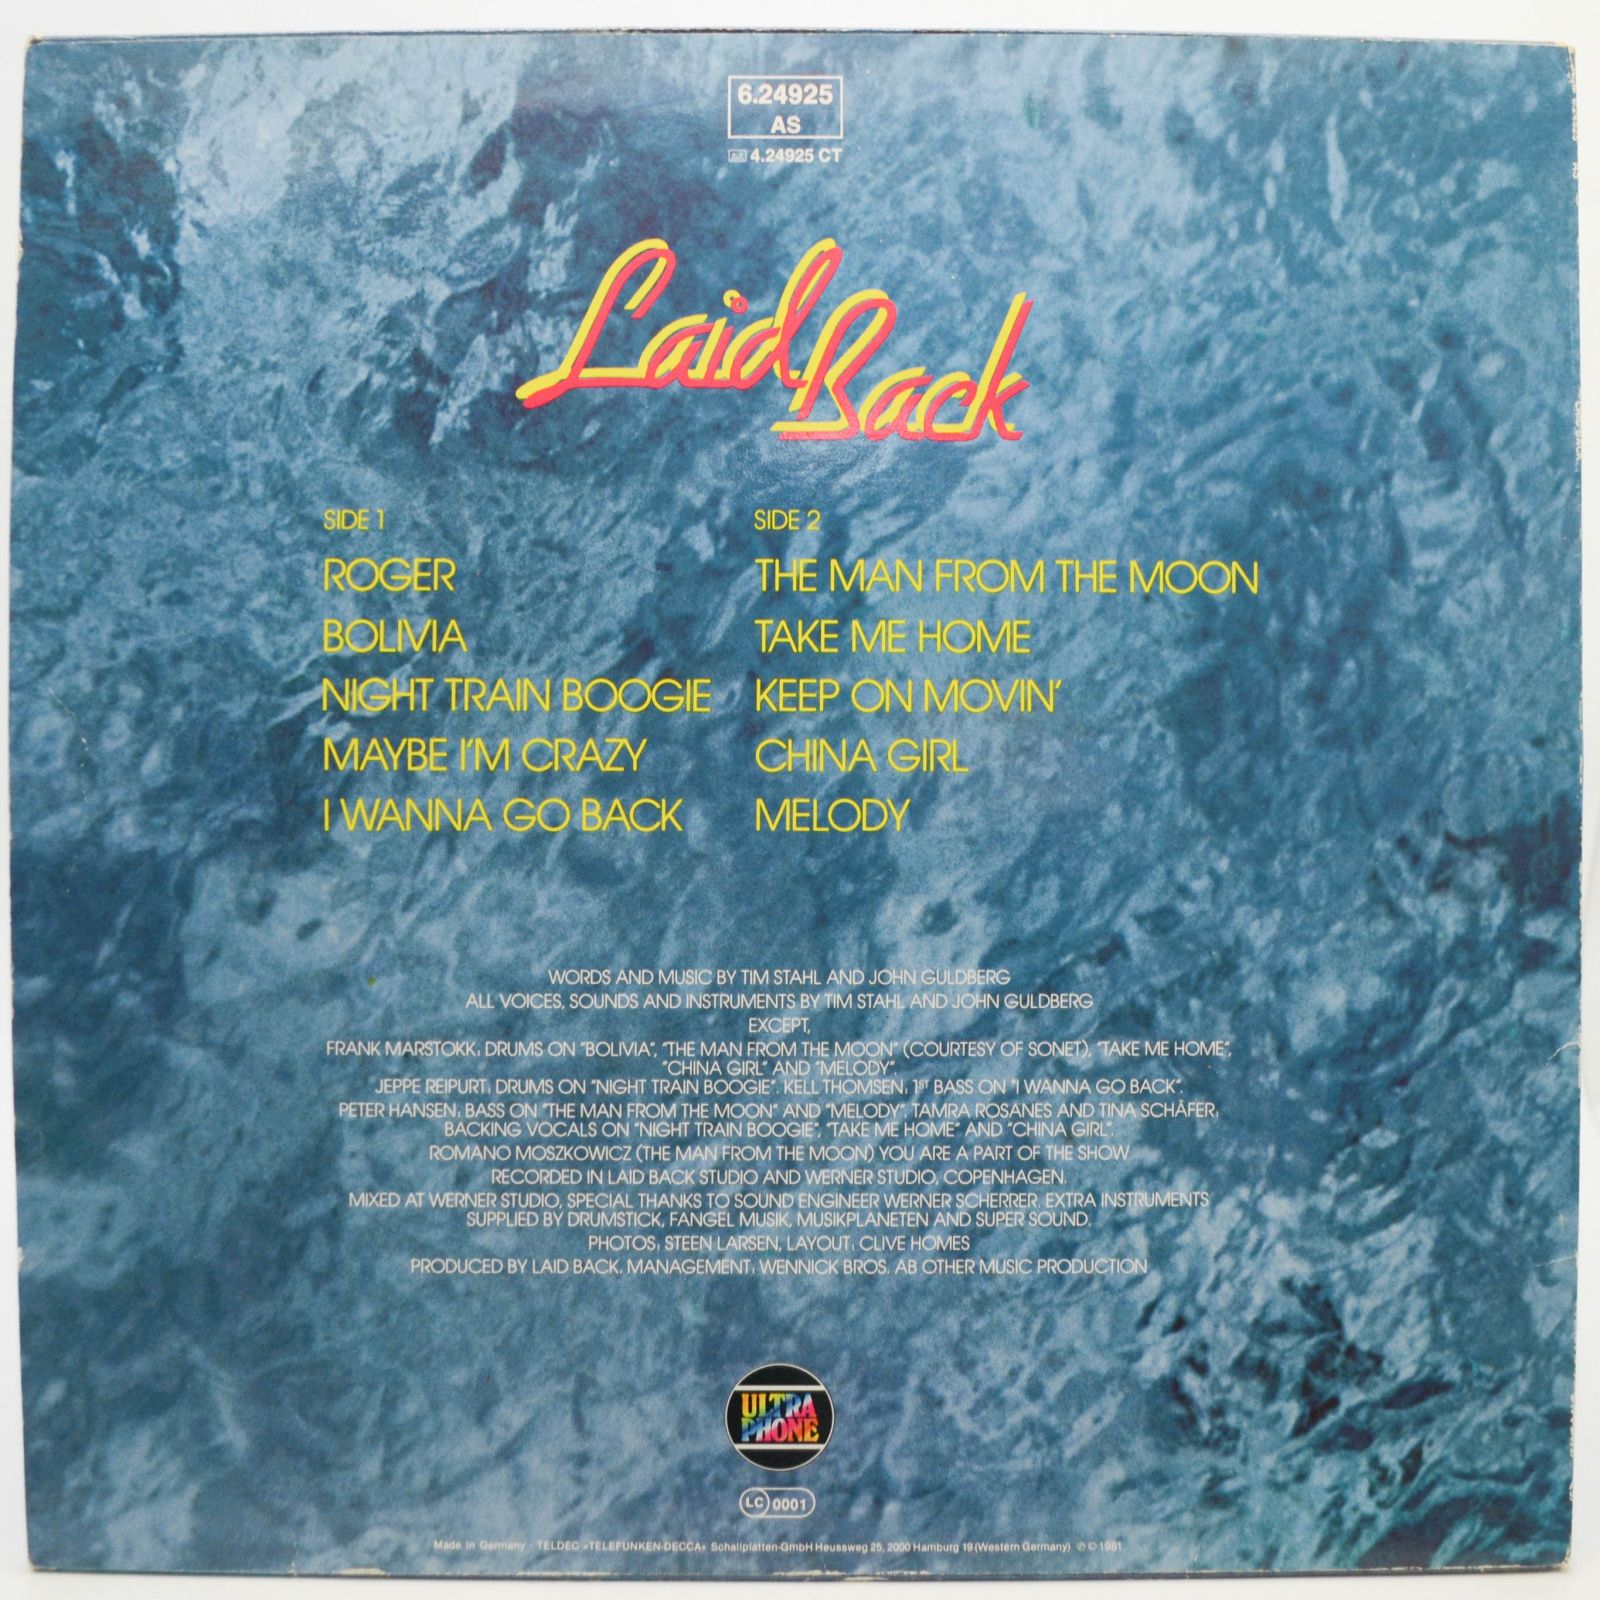 Laid Back — Laid Back, 1981